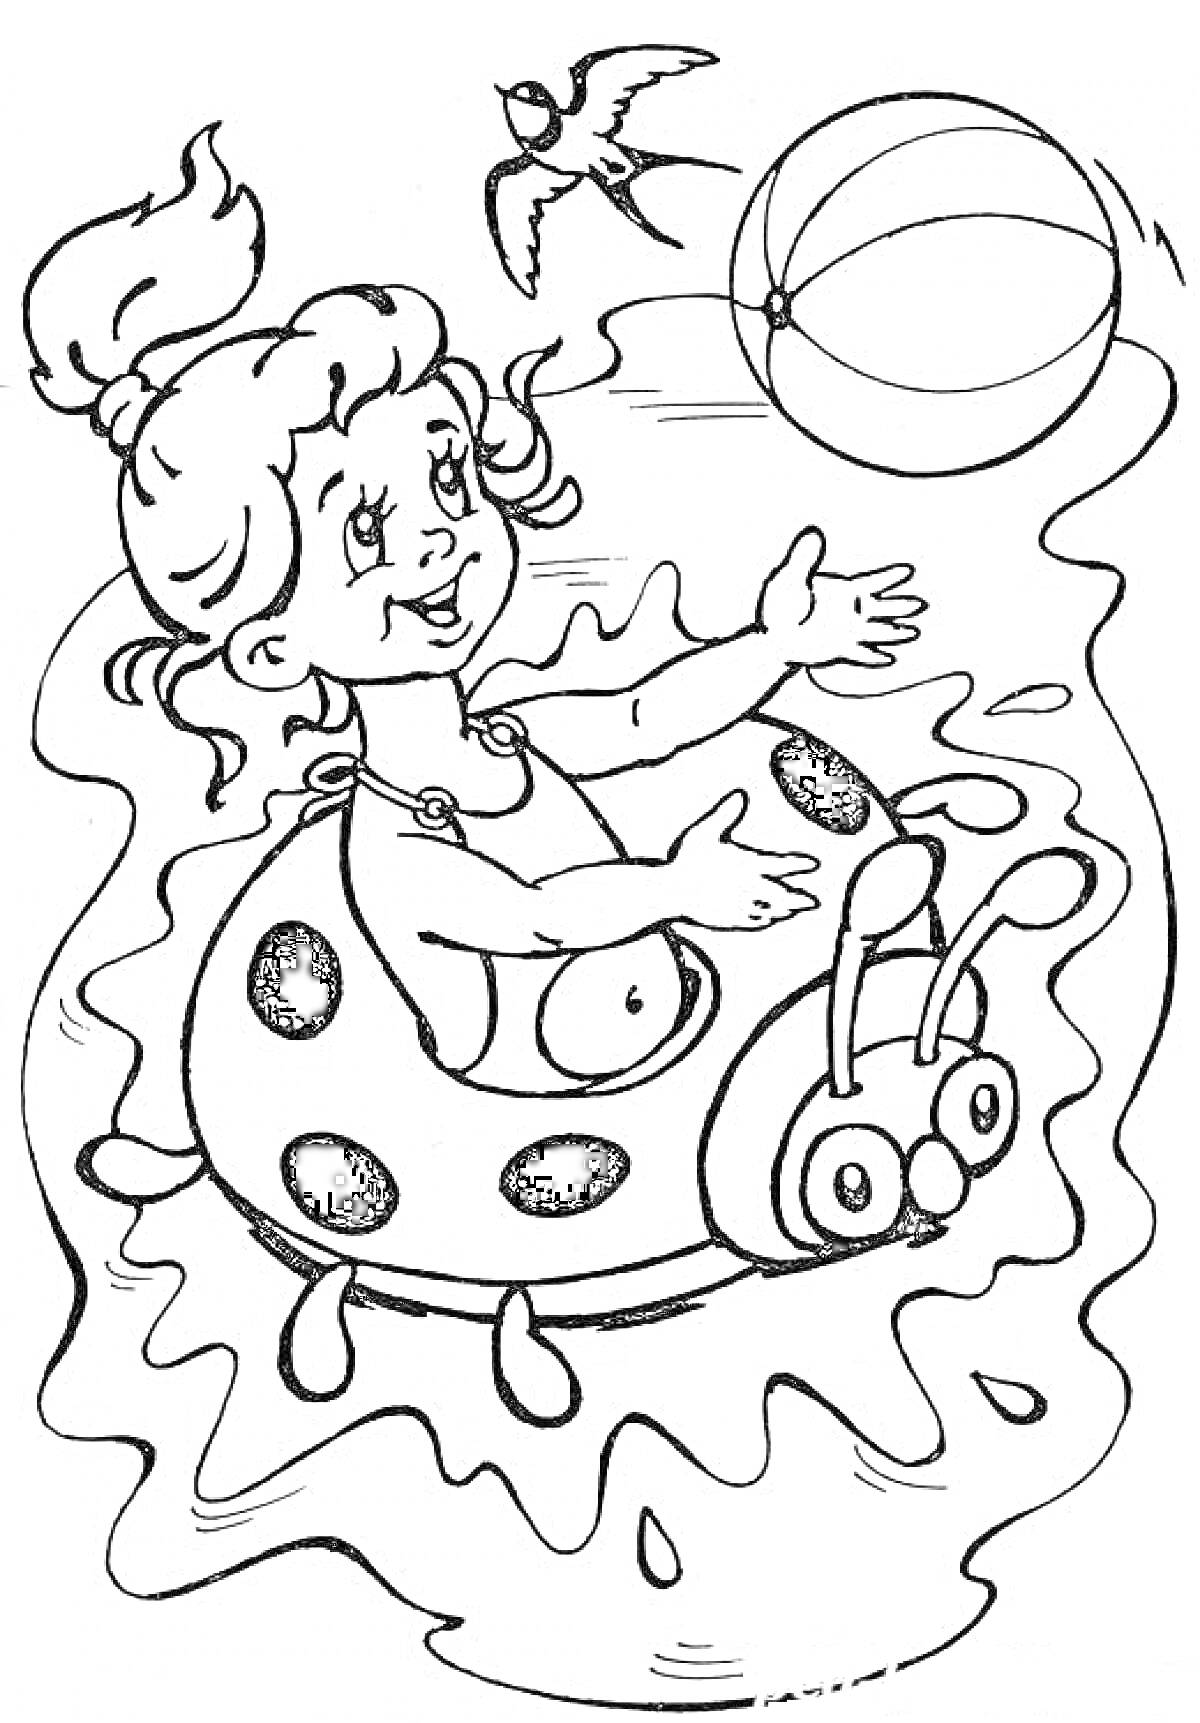 Раскраска Девочка в надувном круге-божья коровка играет с мячом в воде, птица в небе